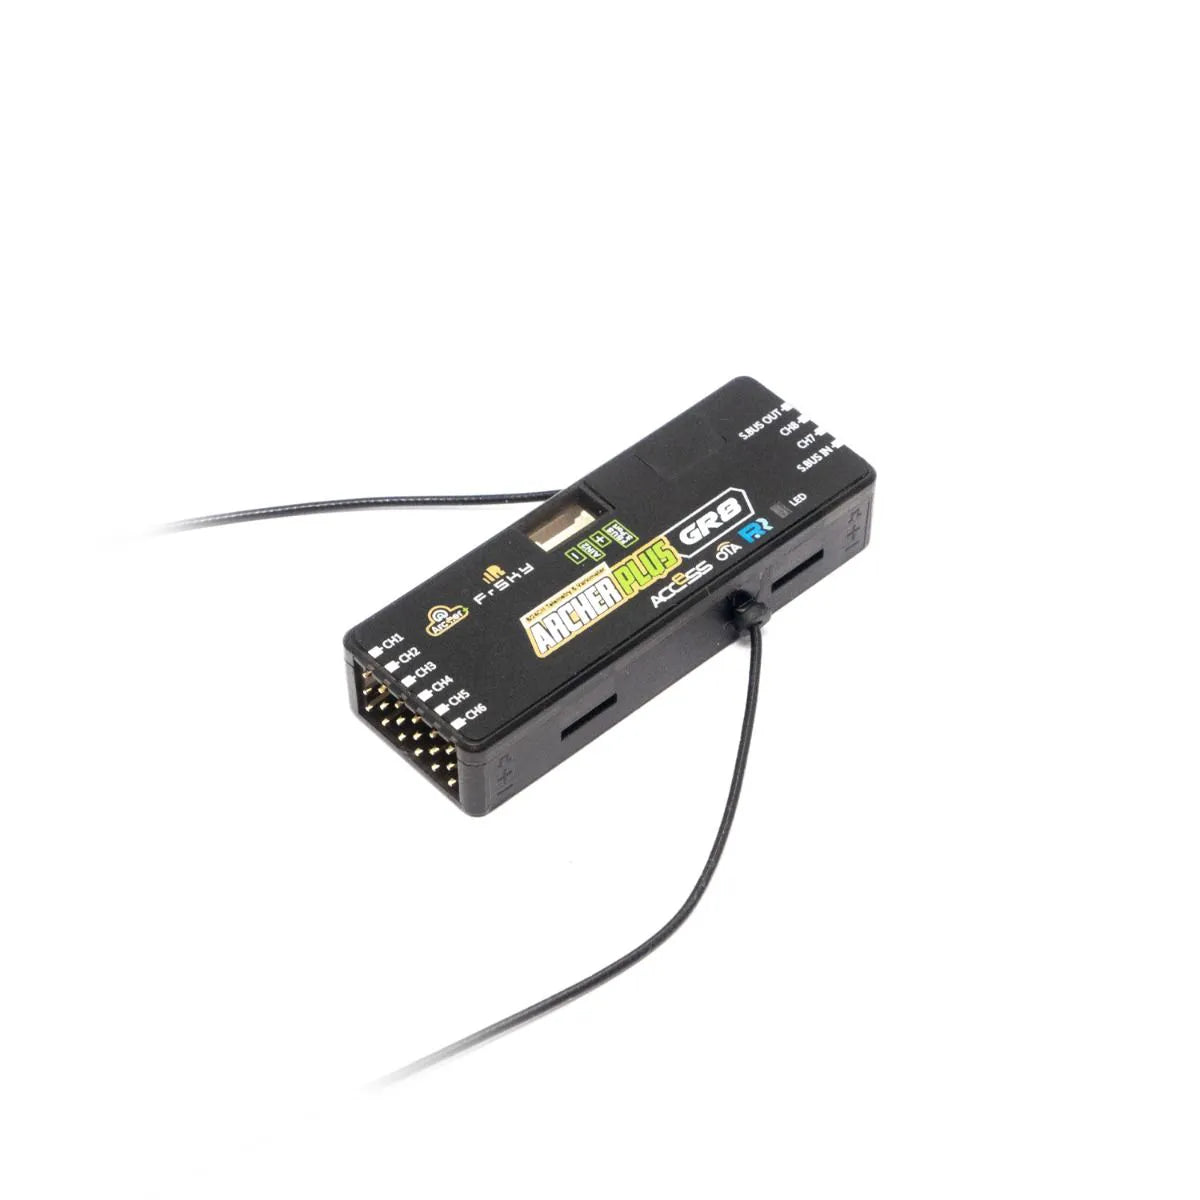 FrSky ARCHER PLUS GR8 Receiver - 2.4G ACCESS/ACCST D16 8 high-precision PWM channel ports